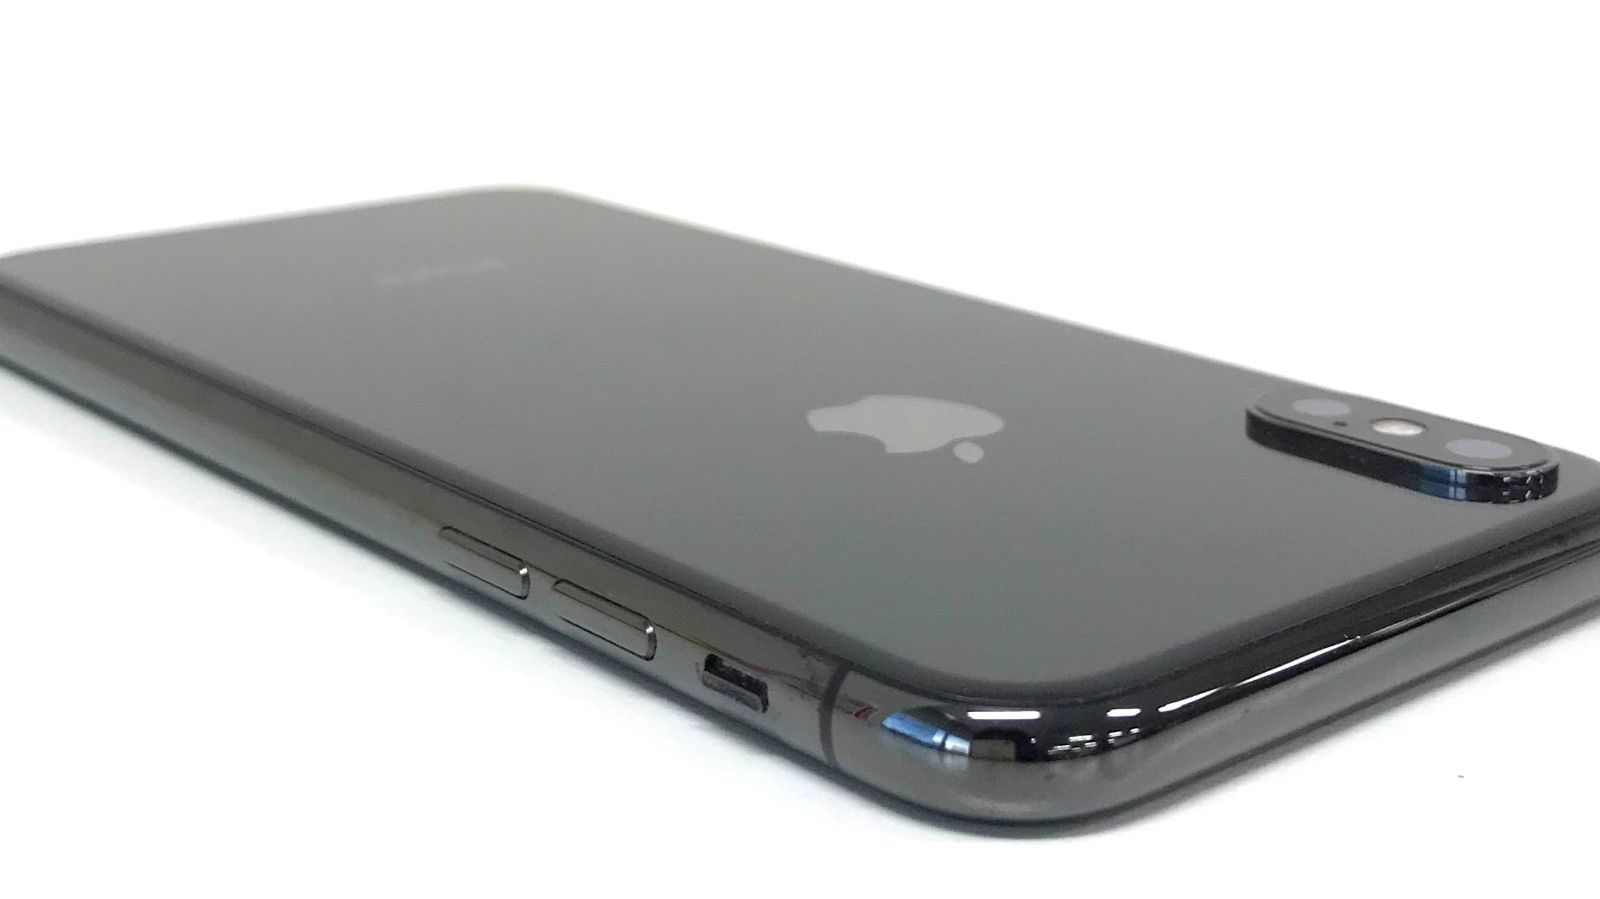 θ【SIMロック解除済み】iPhone X 256GB スペースグレイ - メルカリ